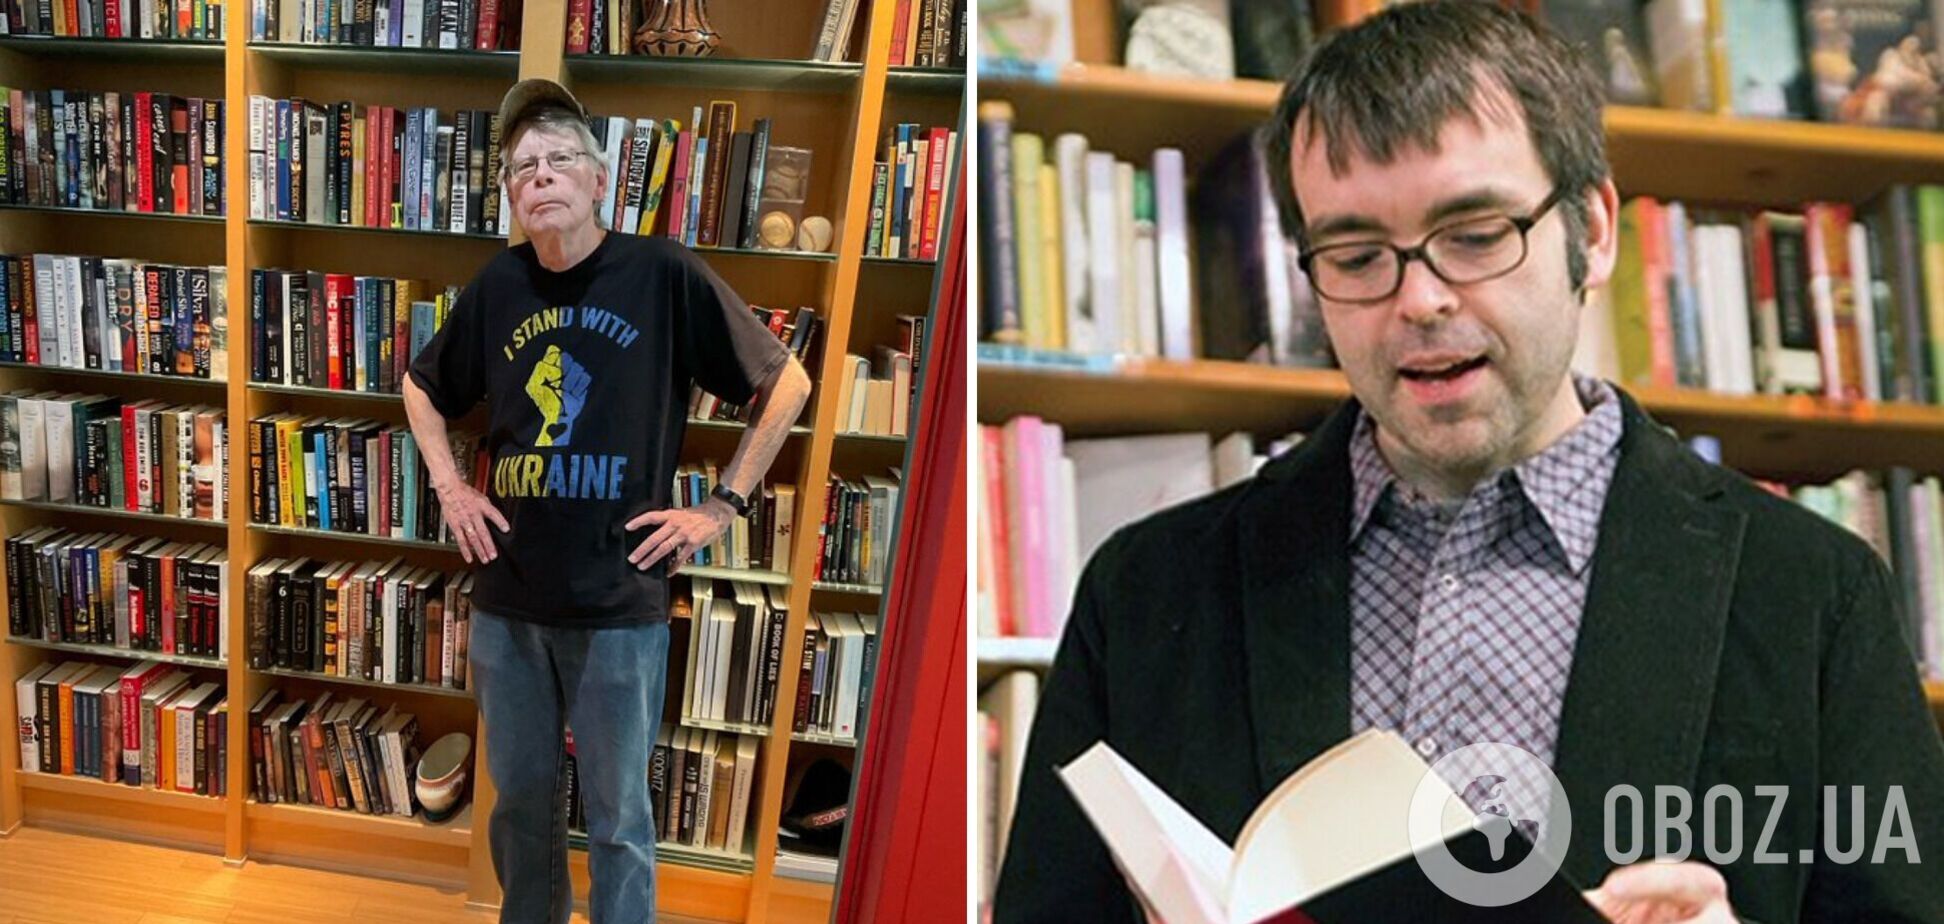 Стивен Кинг анонсировал выход книги своего младшего сына в кепке с надписью 'Украина'. Фото